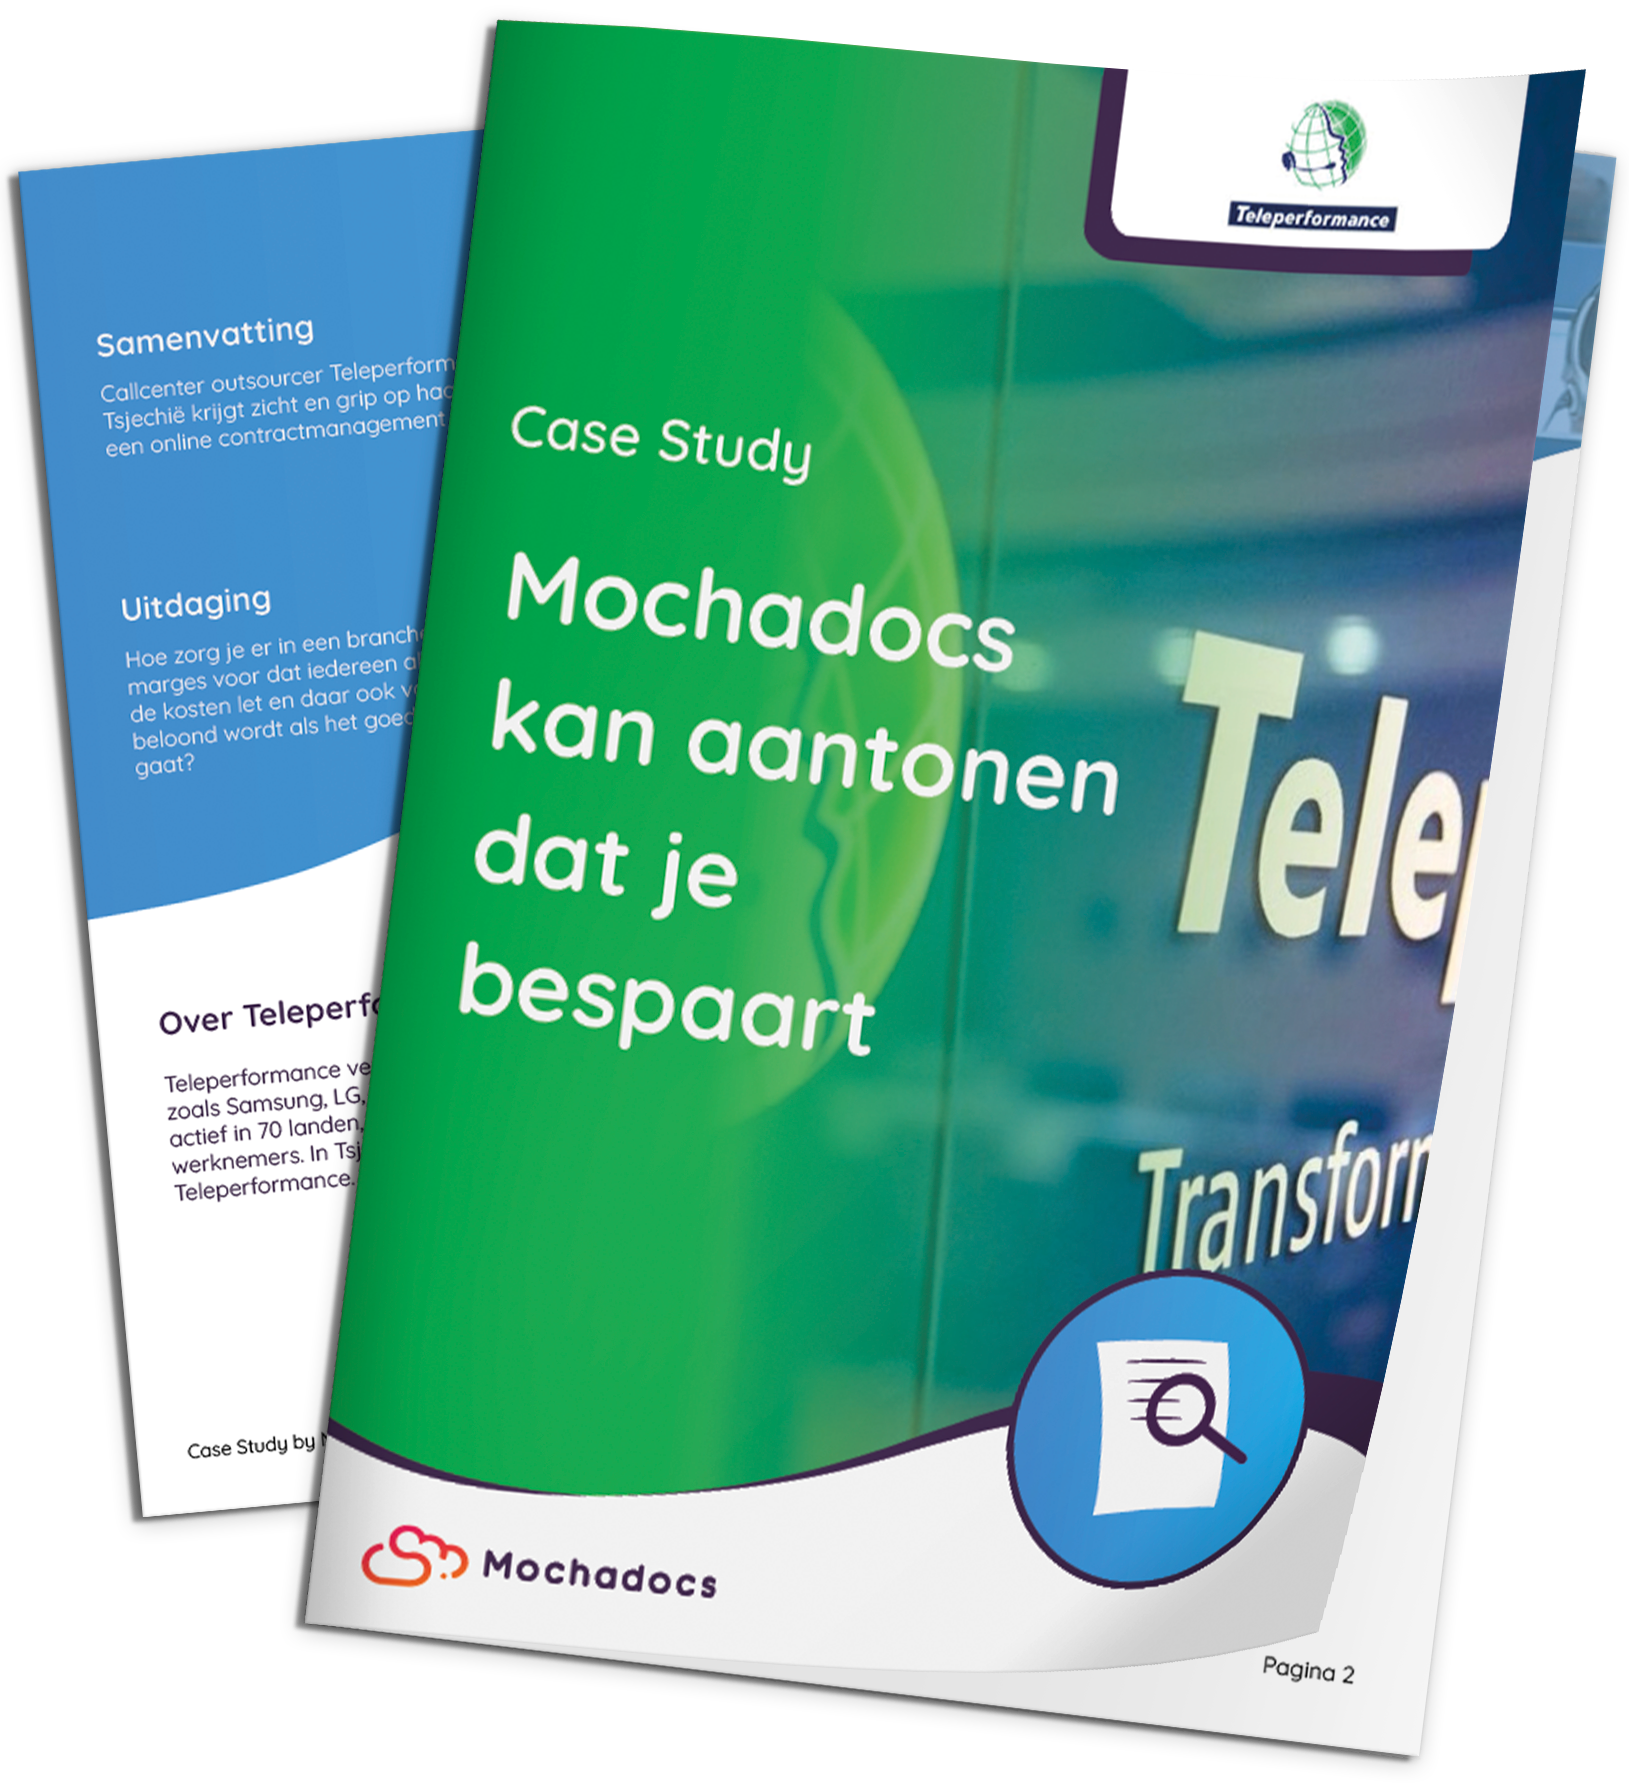 Mochadocs - Contract Management - Case Study - Teleperformance - Mochadocs kan aantonen dat je bespaart